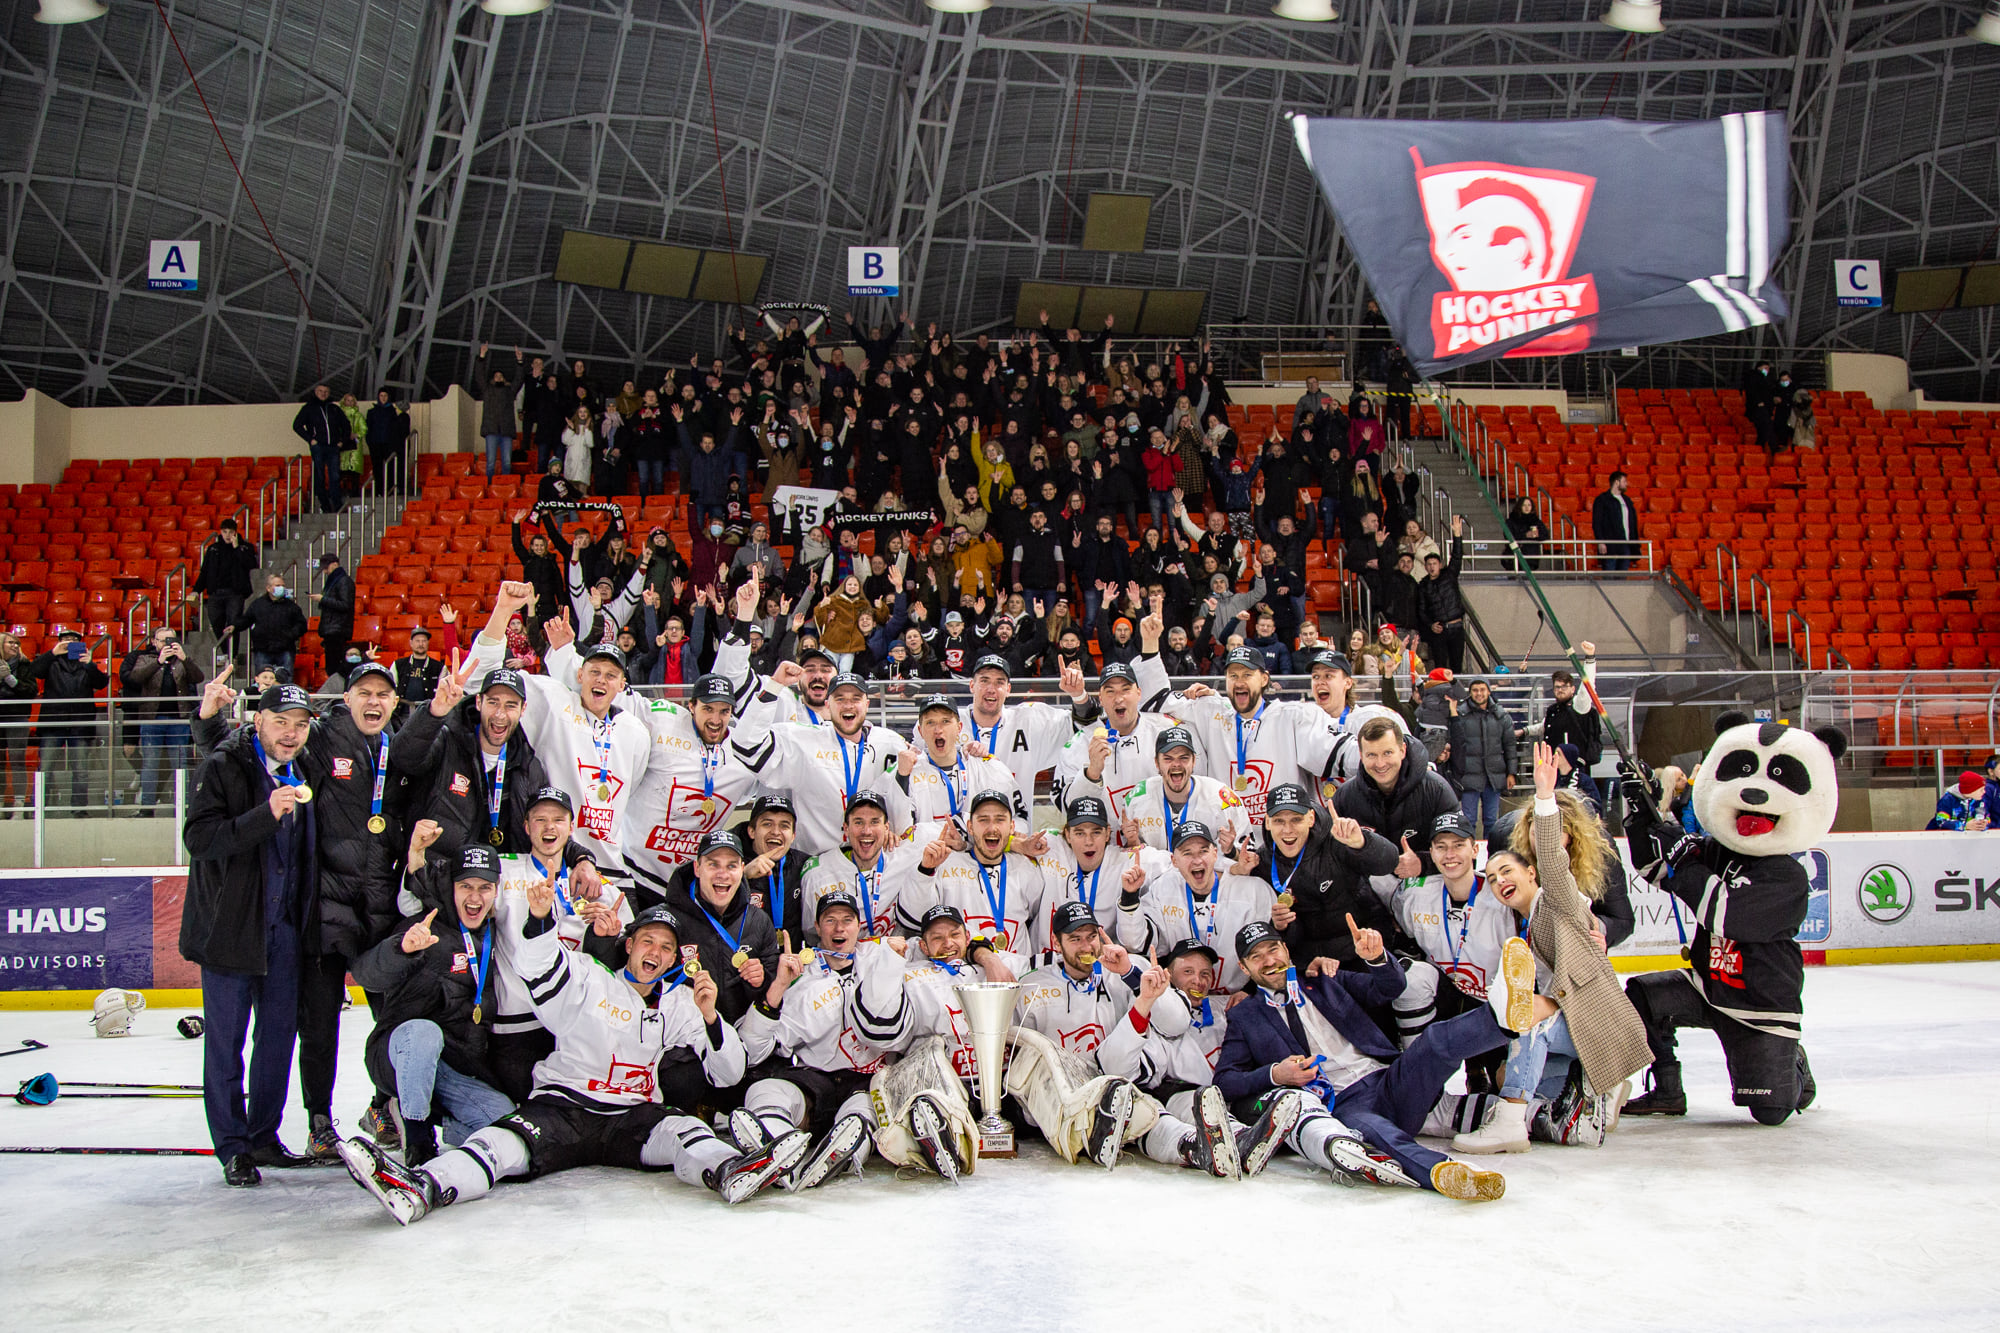 Vilniaus “7bet - Hockey Punks” jau rugsėjį pradės sezoną naujoje Lietuvos ir Latvijos lygoje